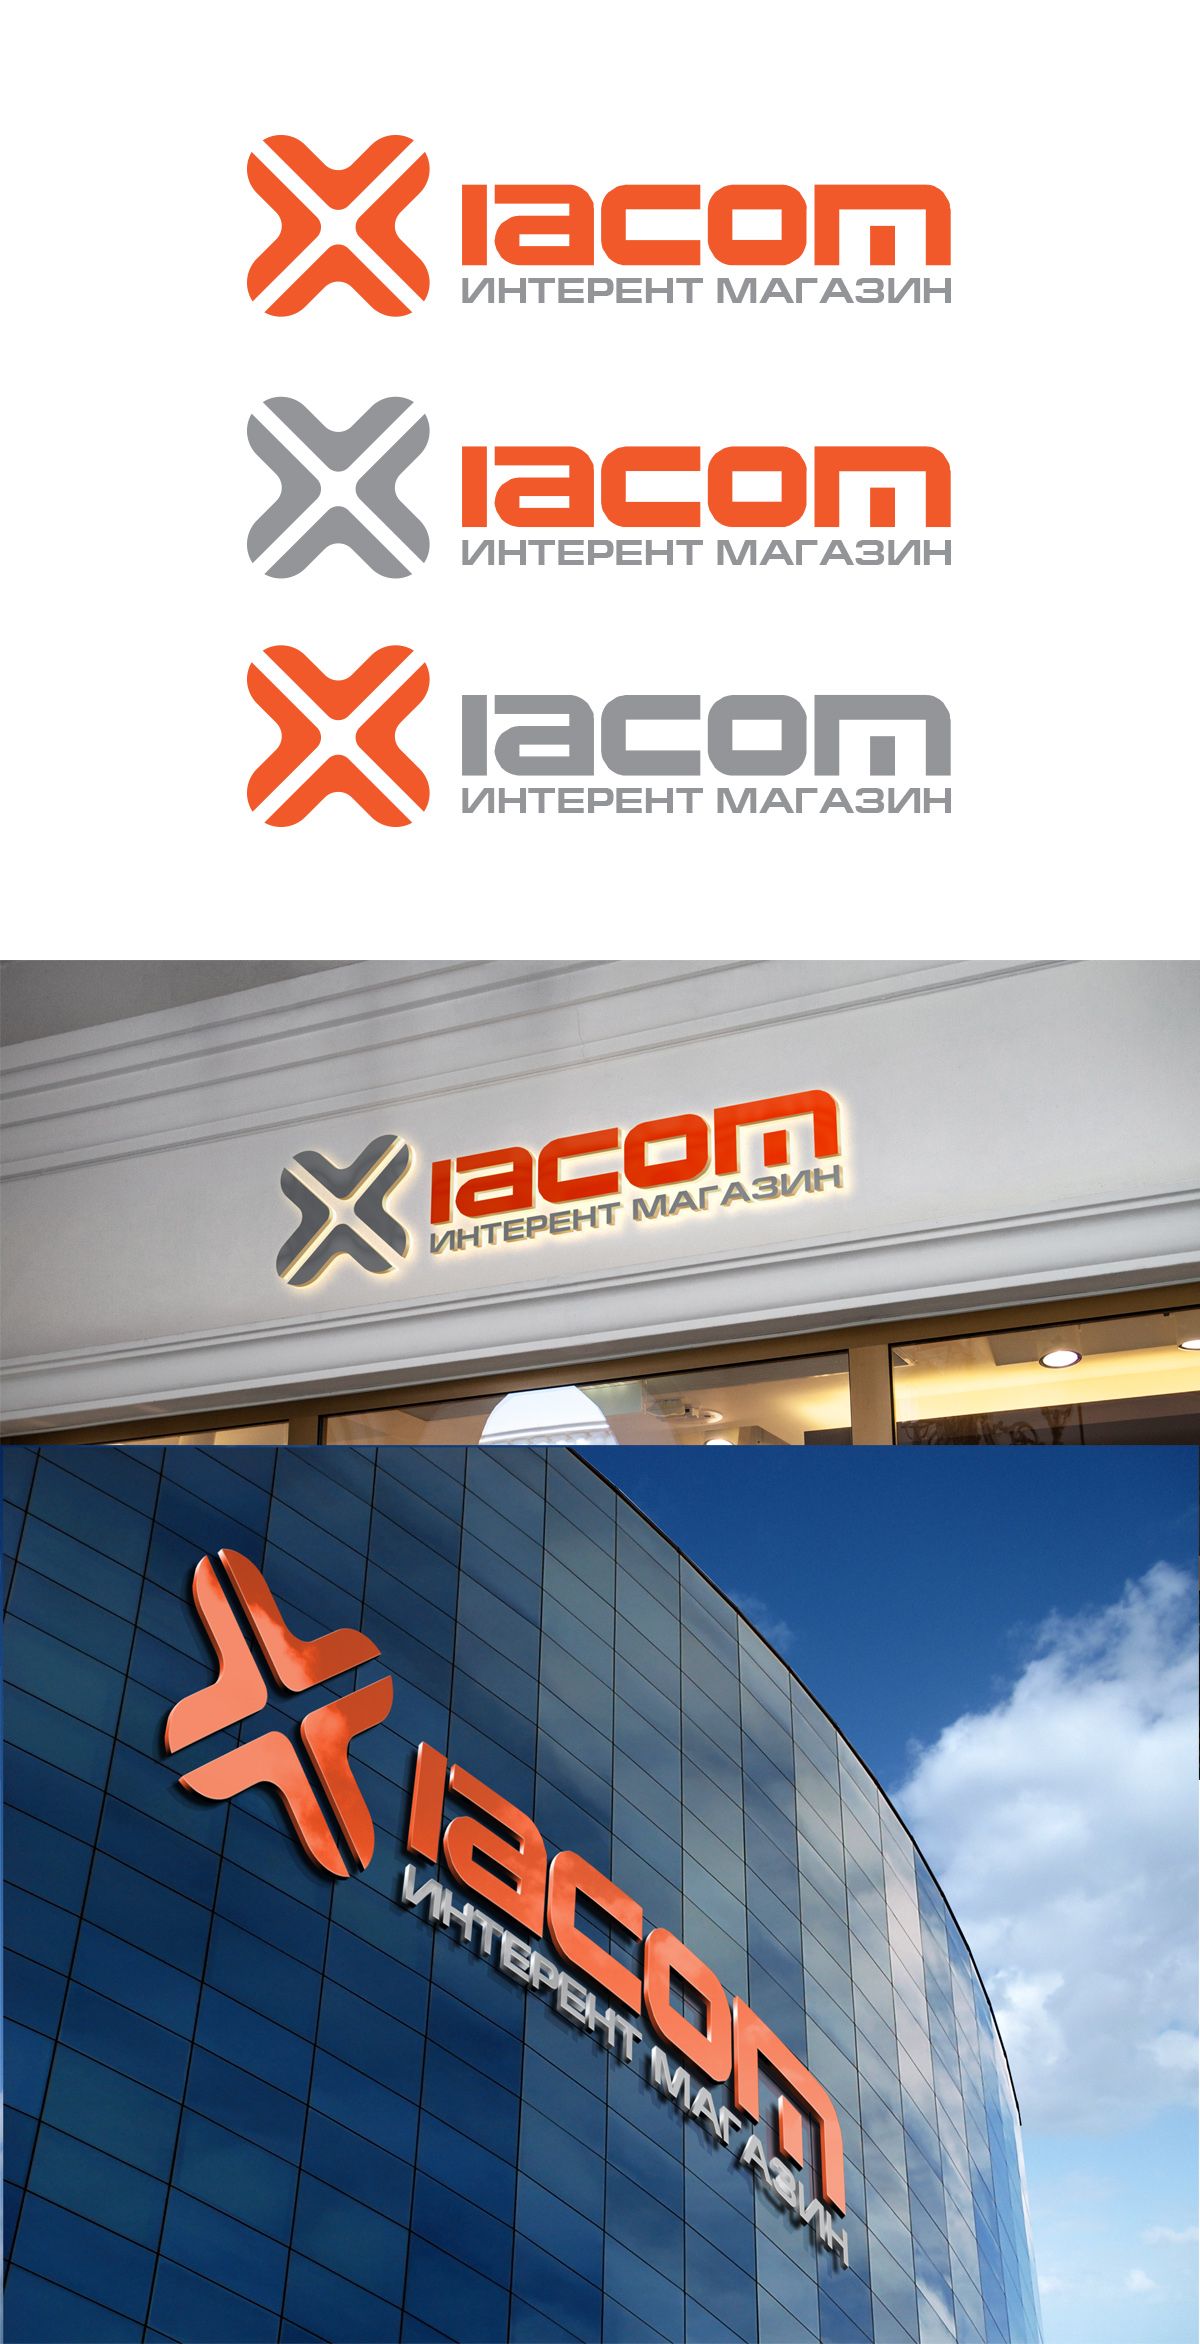 Логотип для Xiacom - дизайнер VF-Group